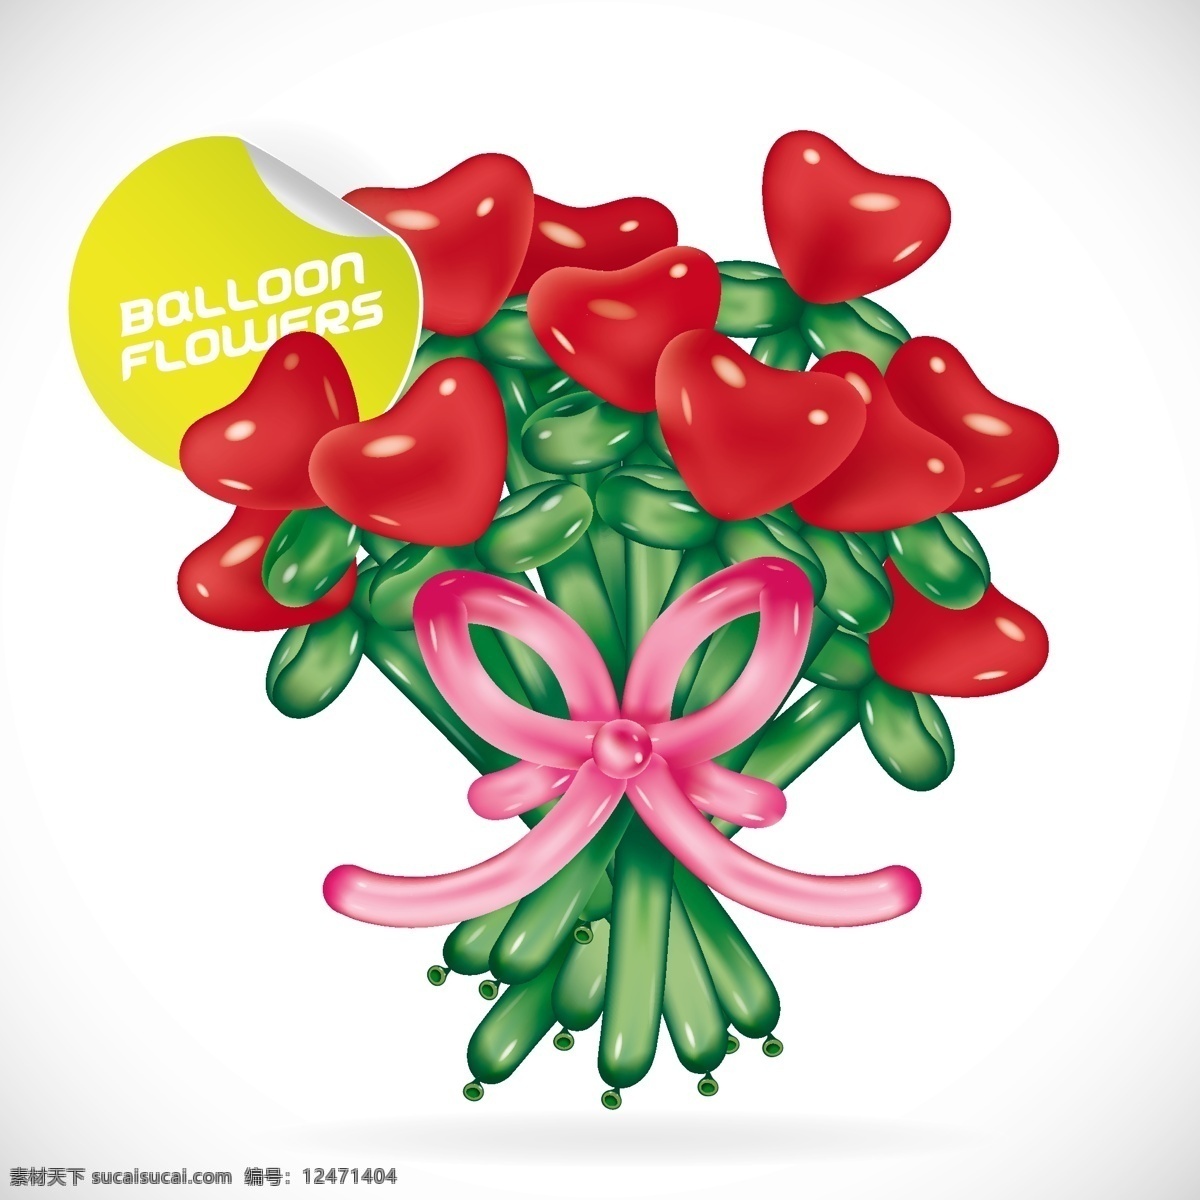 气球鲜花 鲜花 花朵 花束 花卉 玫瑰 可爱 气球 编织 艺术 手绘 矢量 草地 绿 草 花草 主题 生物世界